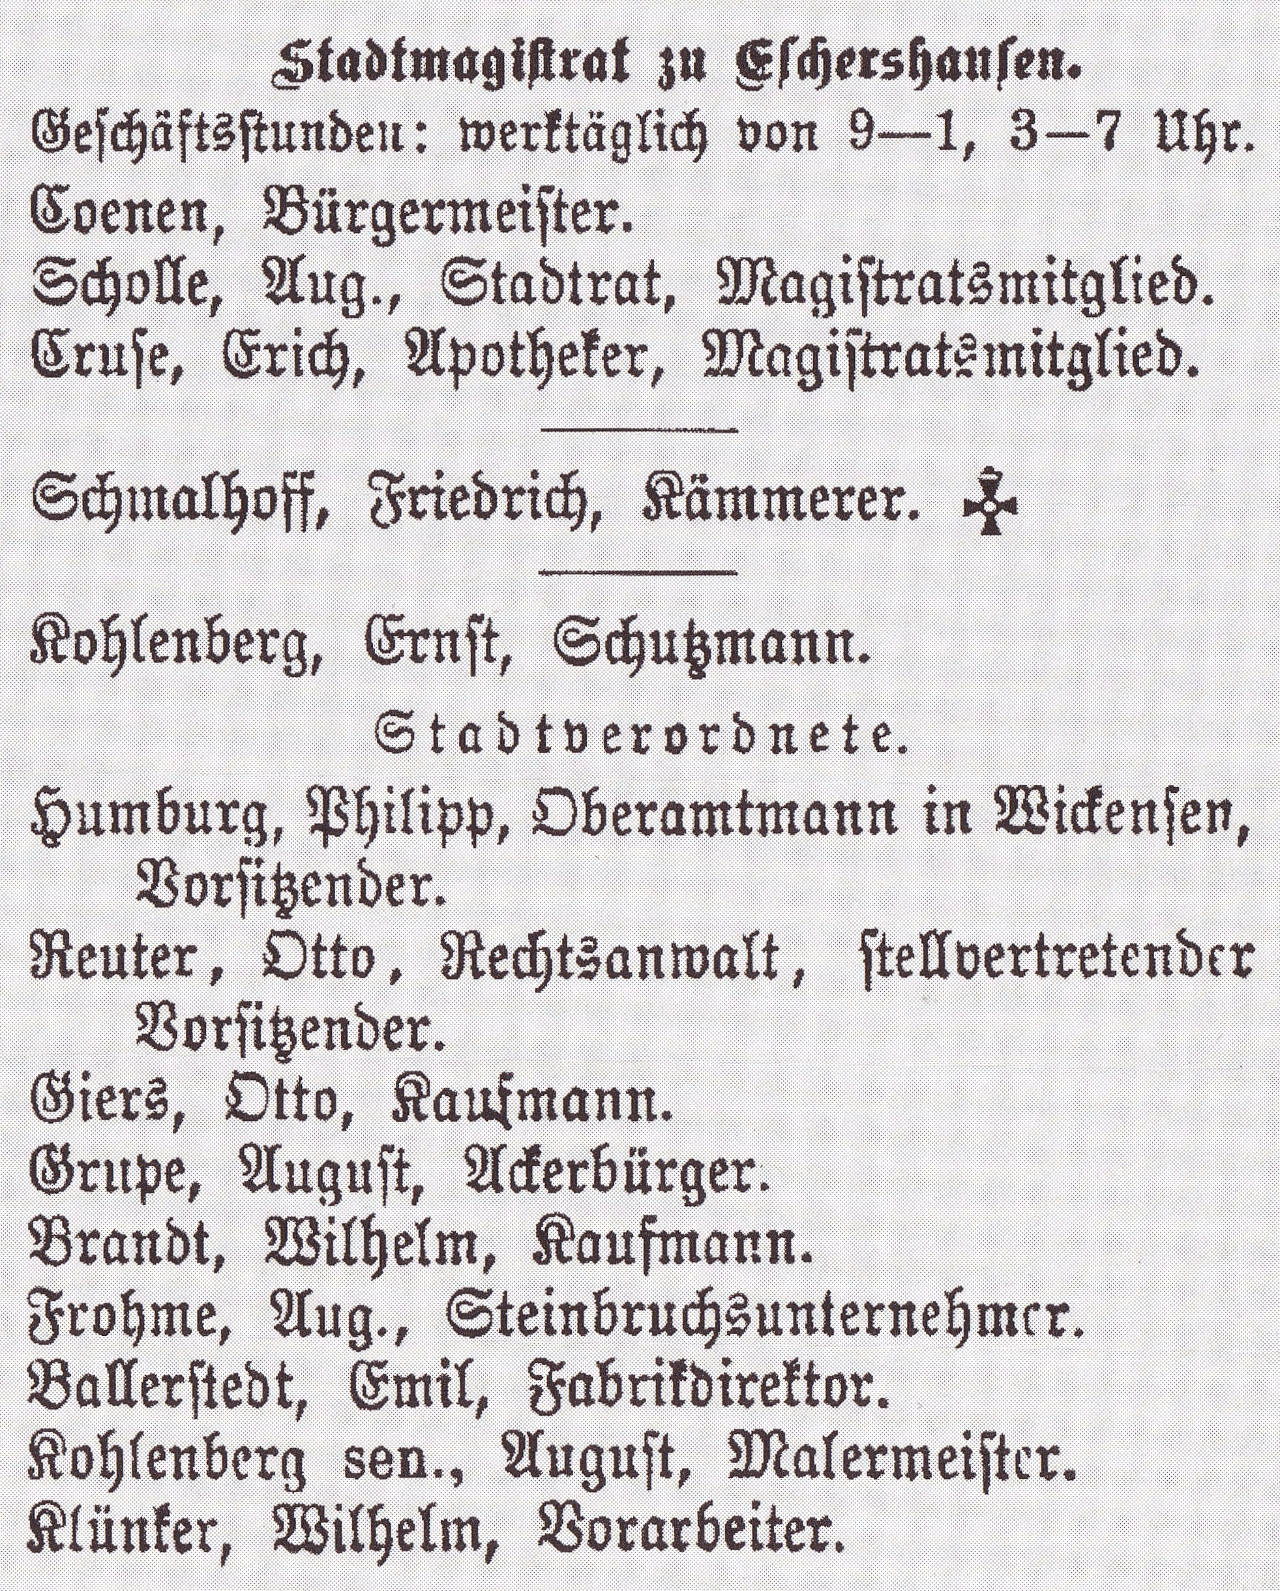 01-Stadtmagistrat-1914